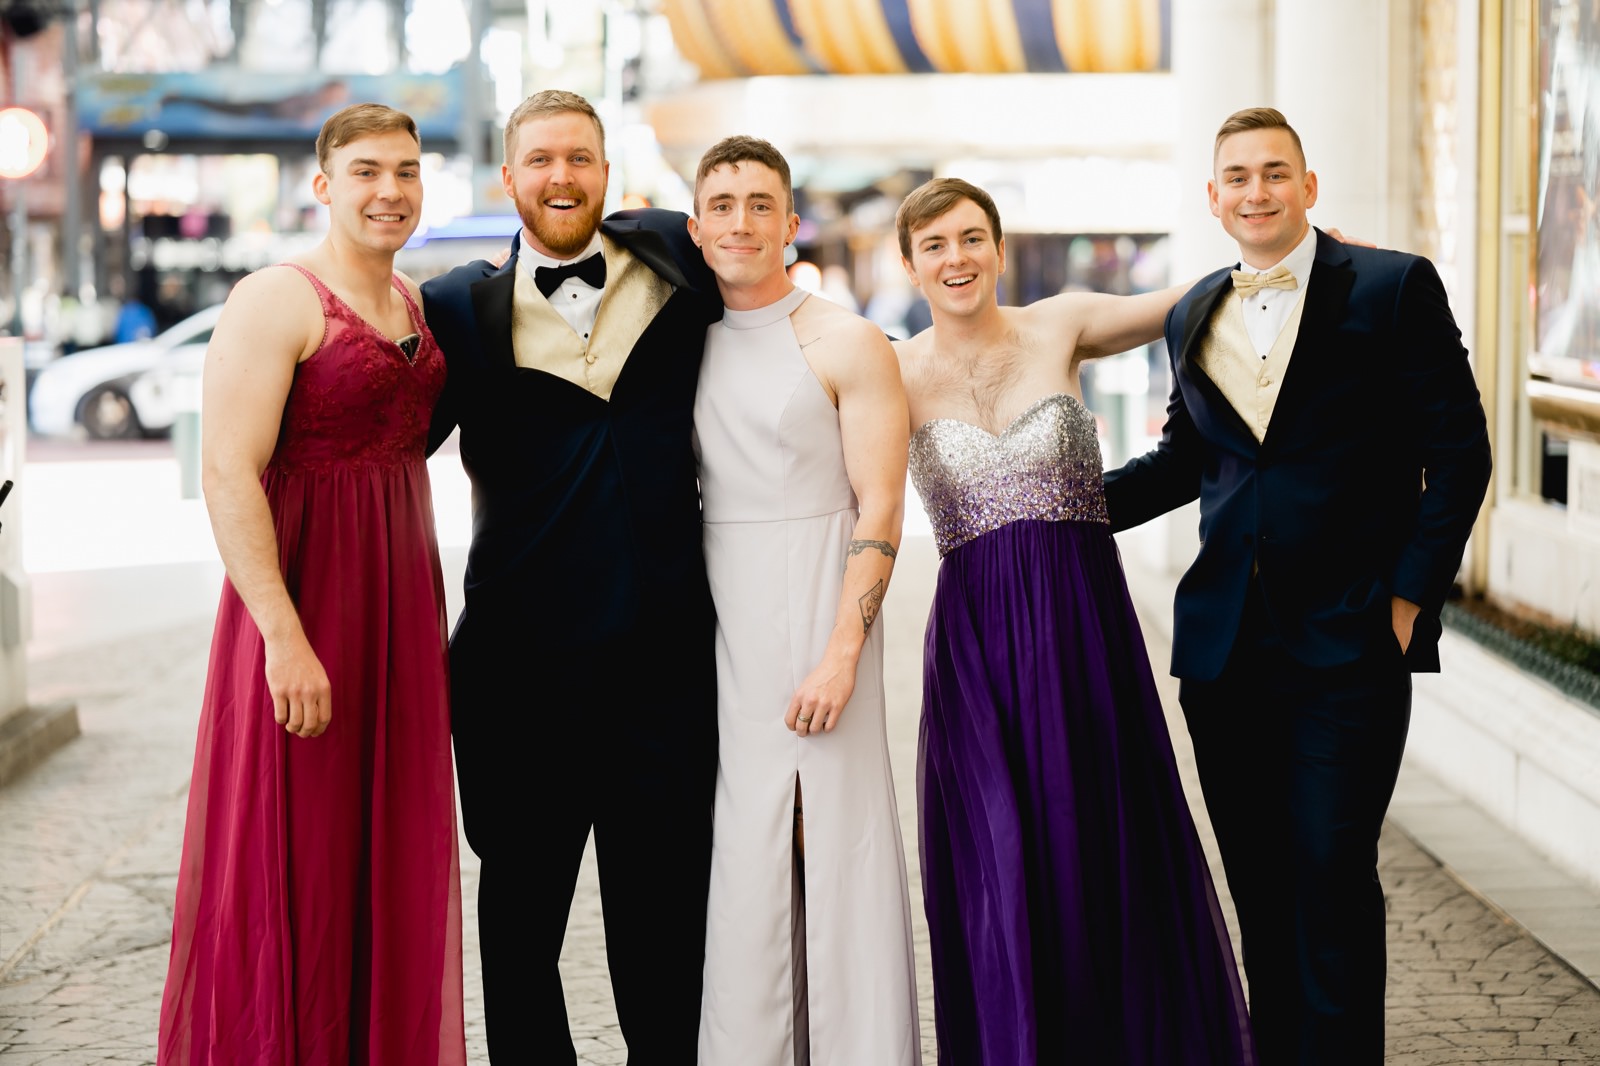 Groom with groomsmen in bridesmaid dresses